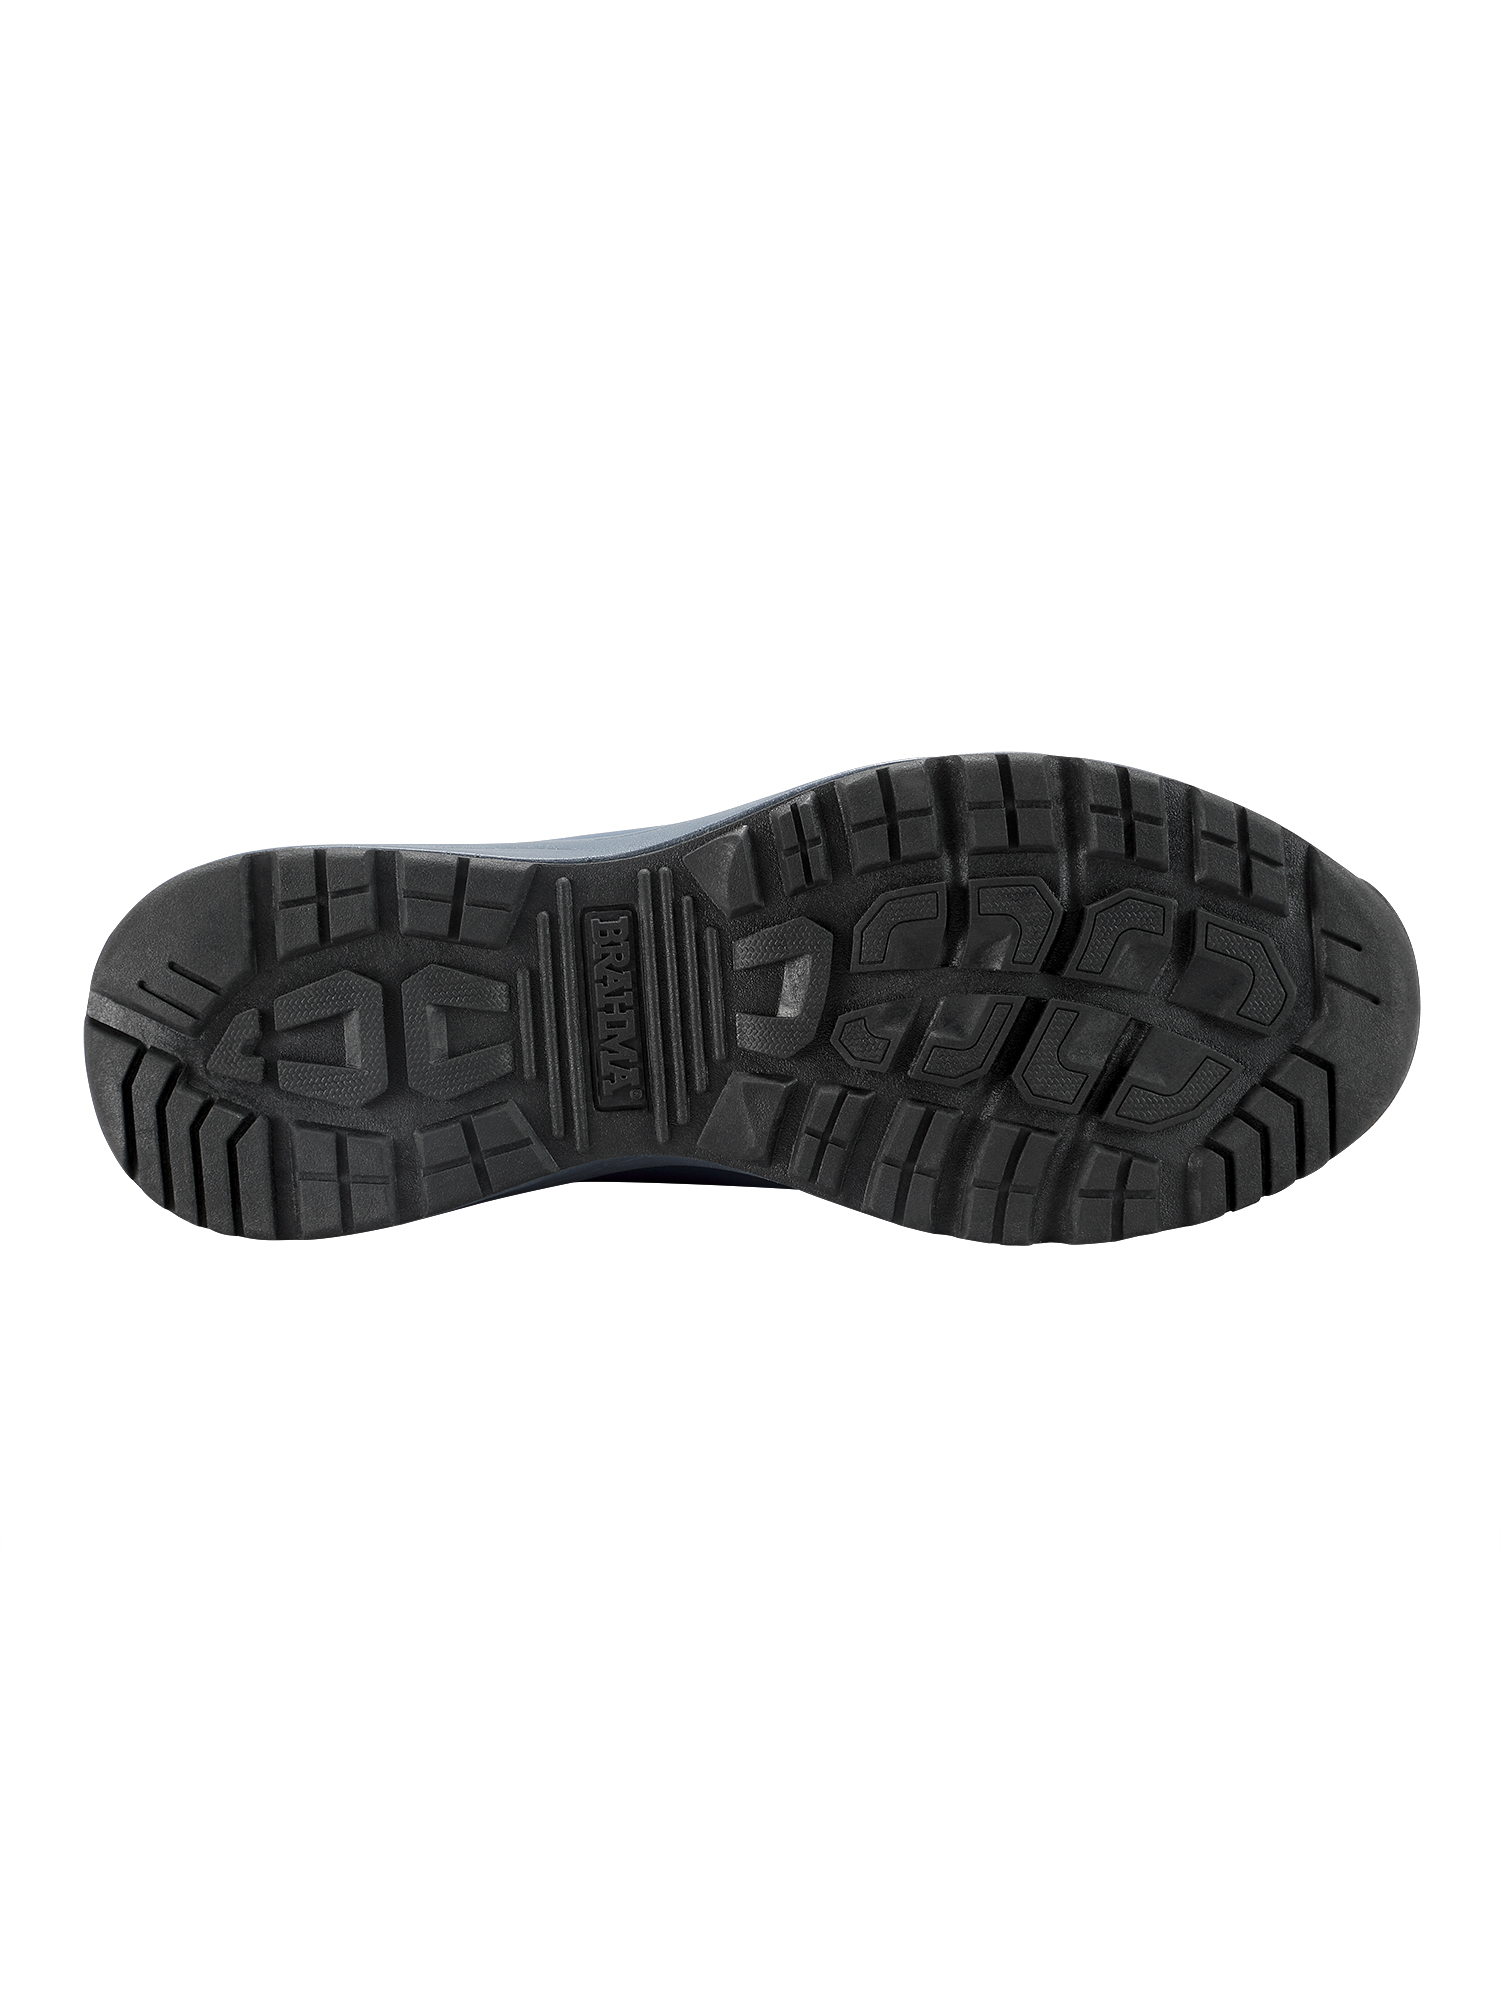 Brahma Men's Blast Off Steel Toe Work Shoes - Walmart.com